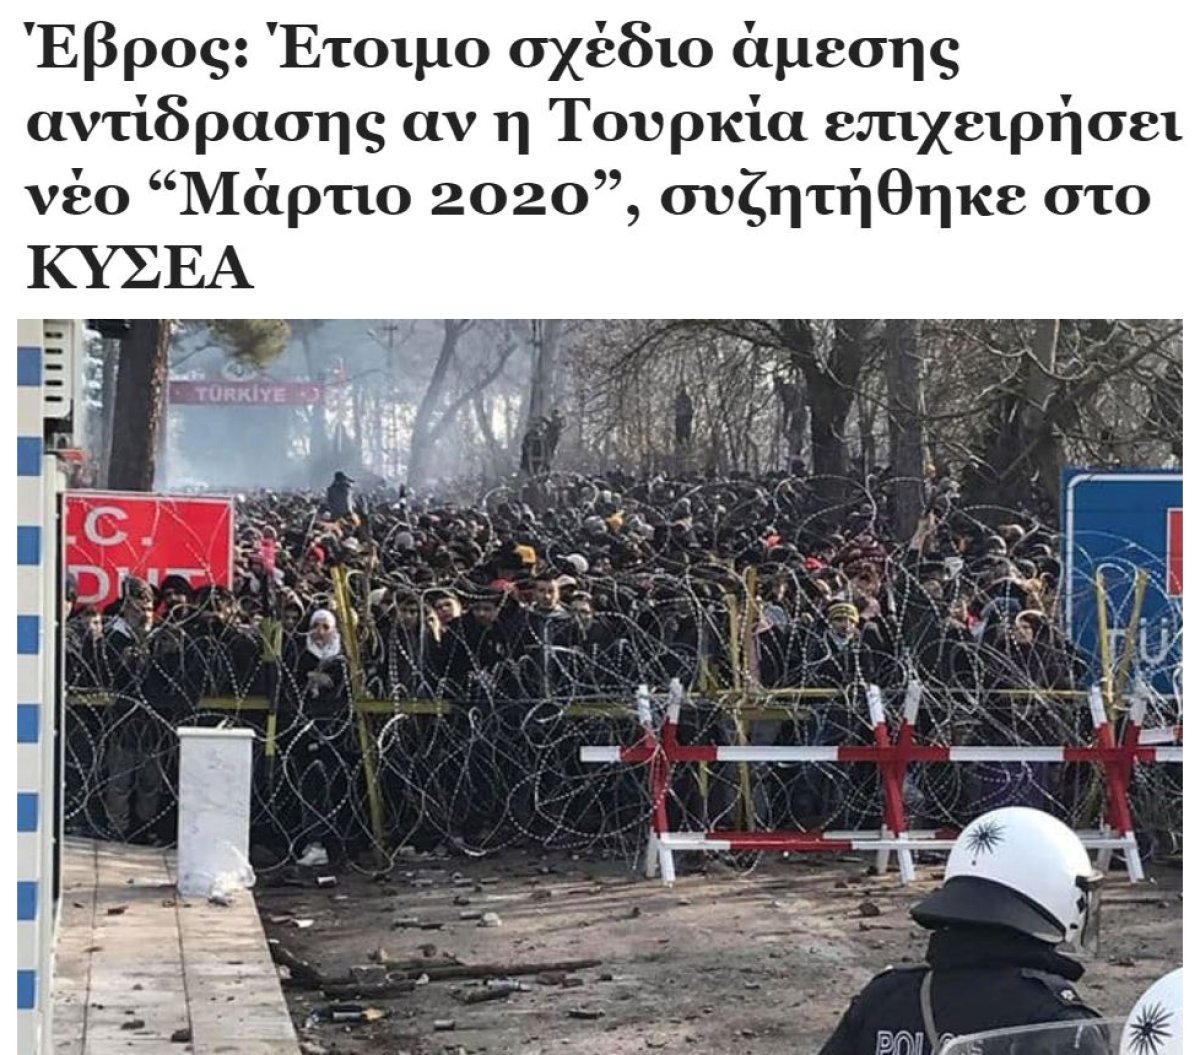 Yunanistan, Türkiye den sınıra göçmen hareketliliği olabileceğini düşünüyor #2